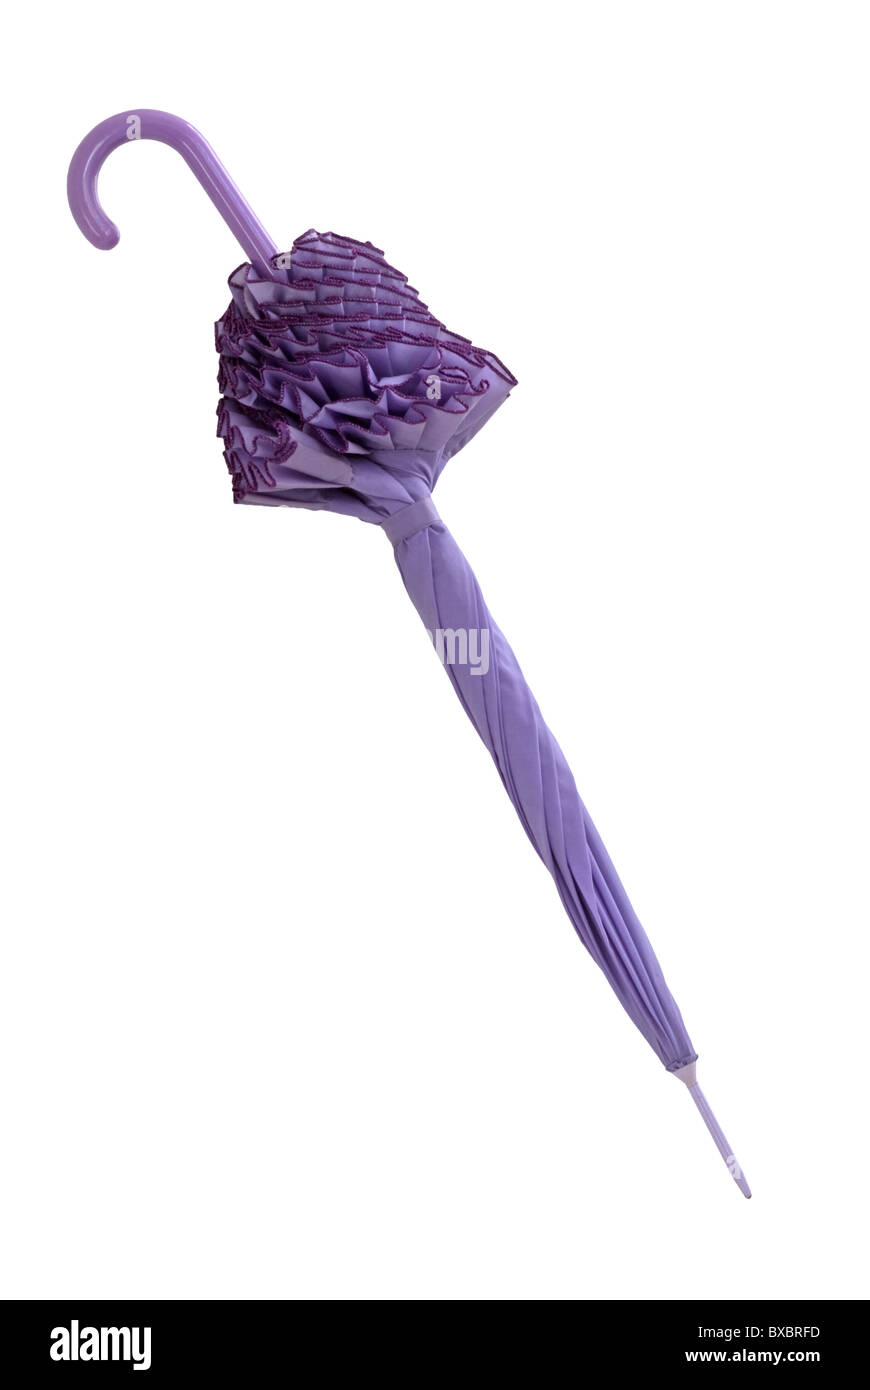 Geschlossener purpurner Sonnenschirm oder Schirm mit Rüschen. Isoliert oder ein Ausschnitt. Stockfoto